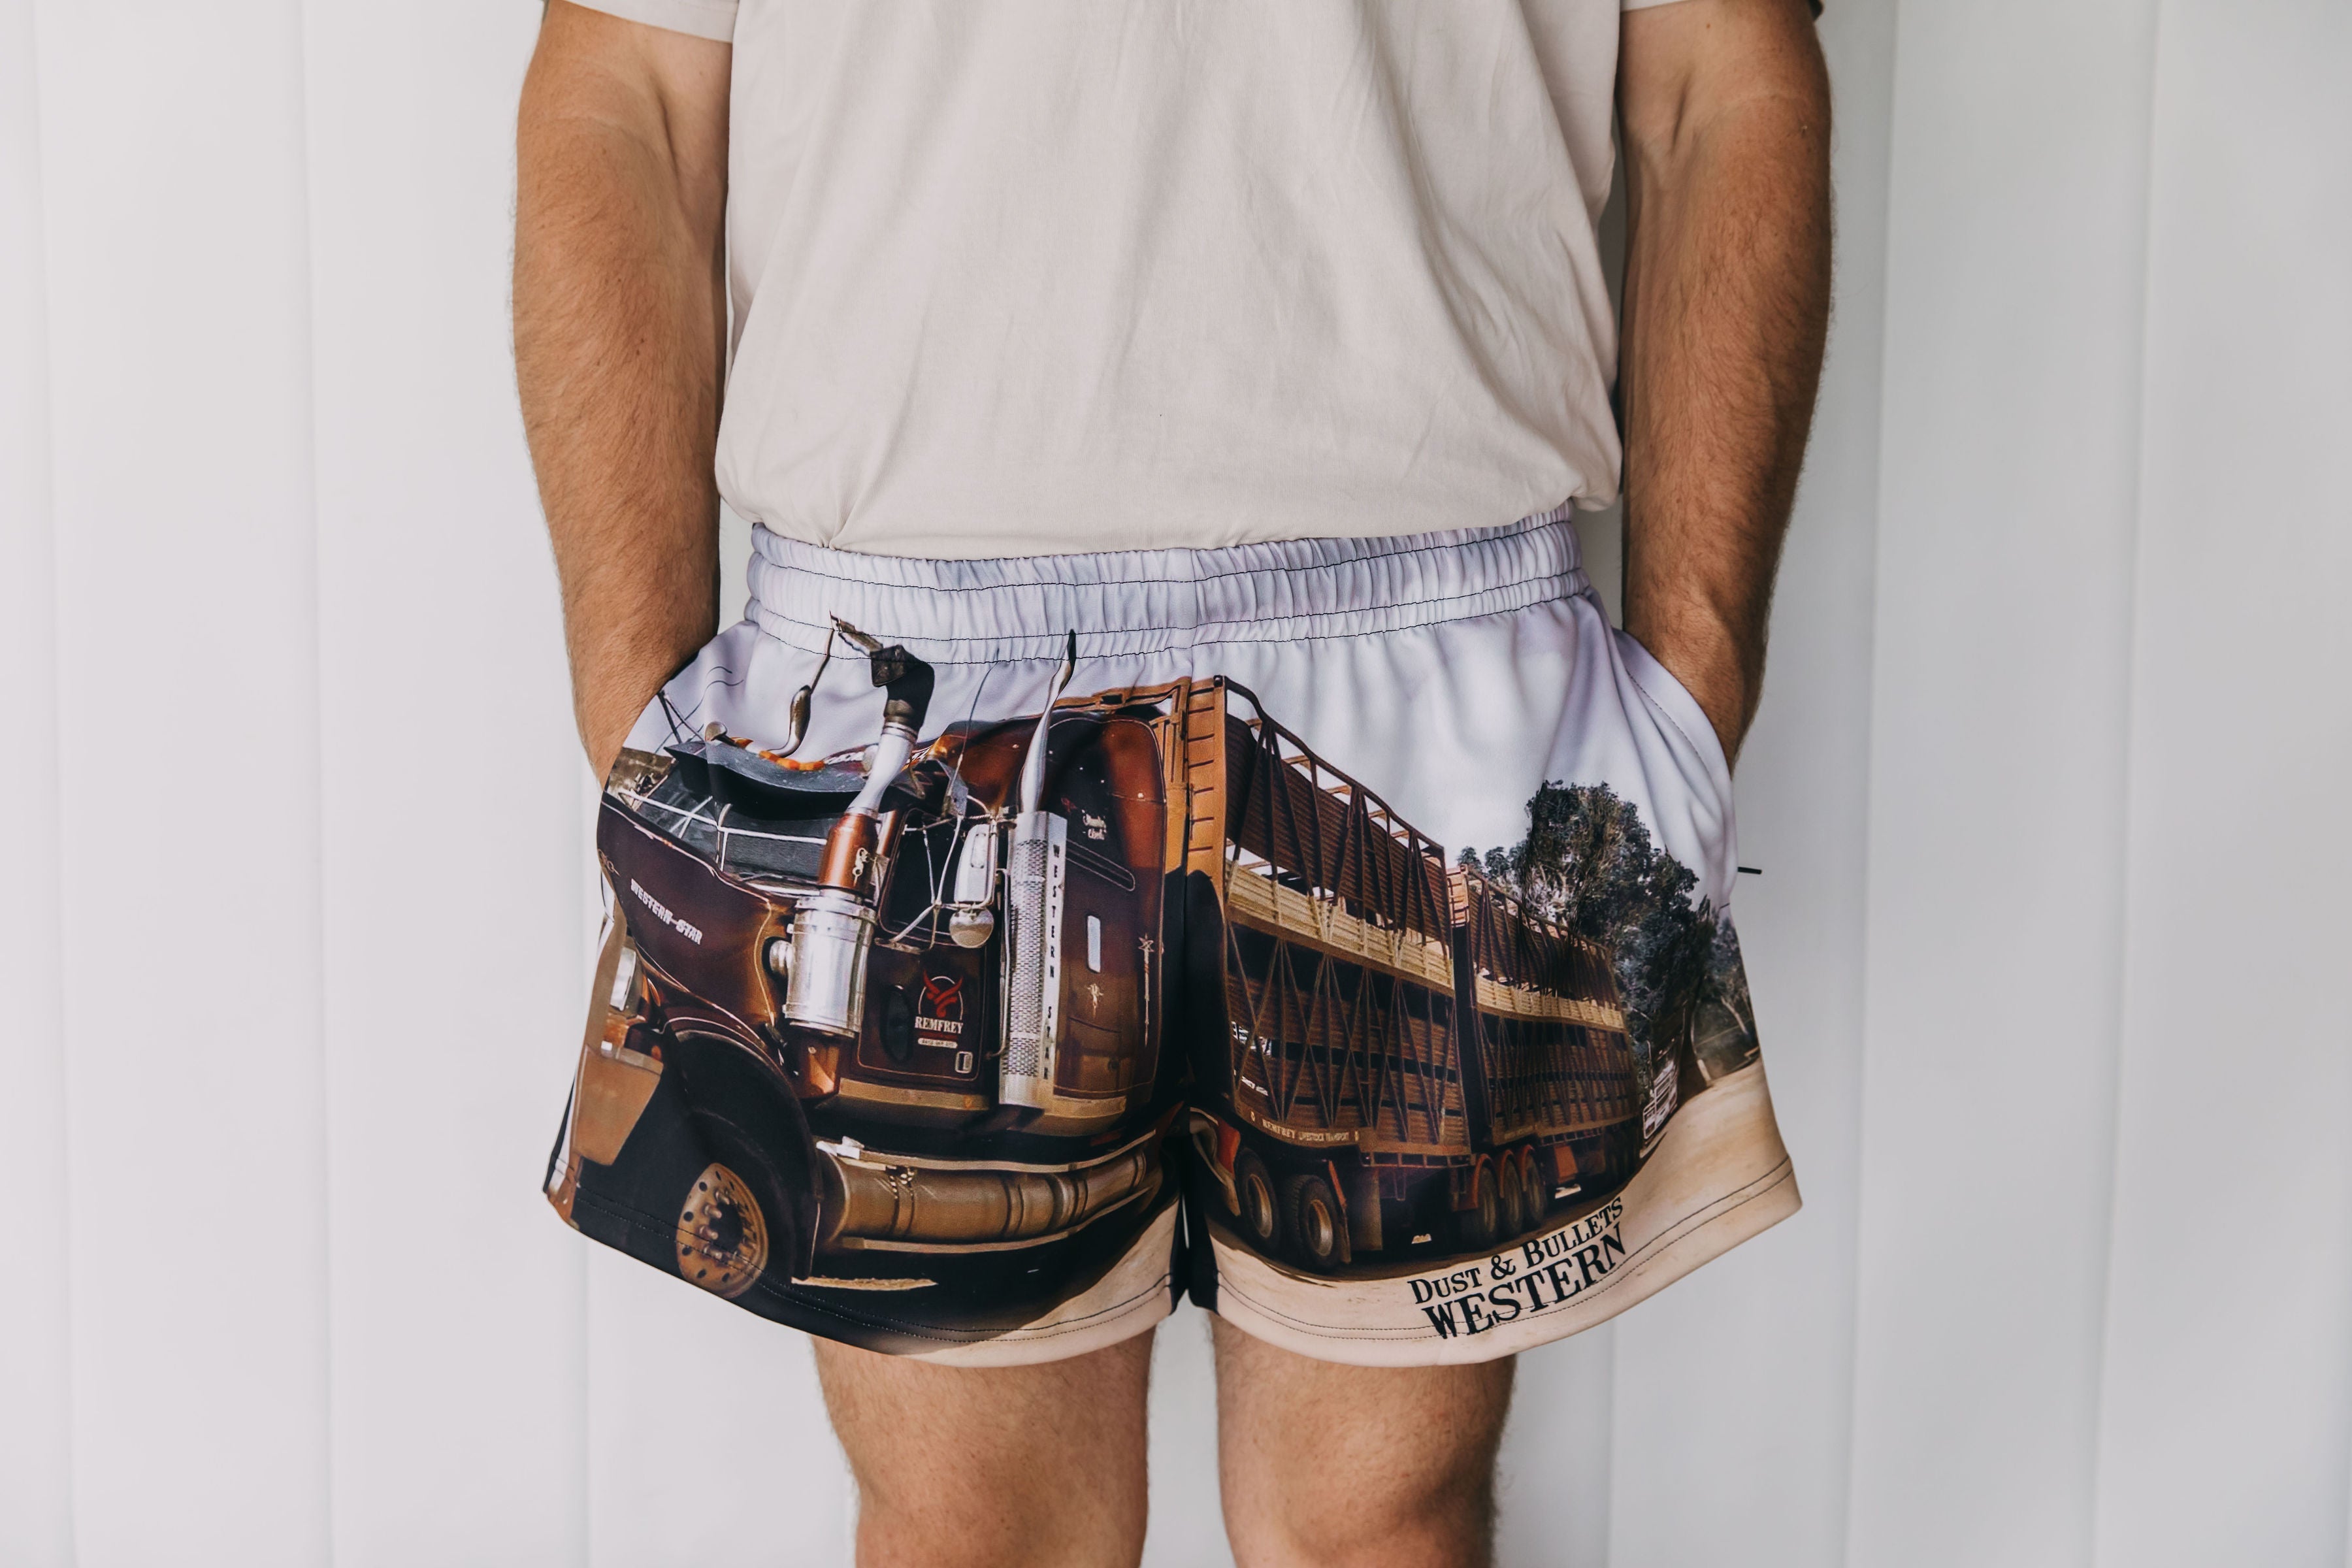 Dusty Trucker Footy Shorts buy